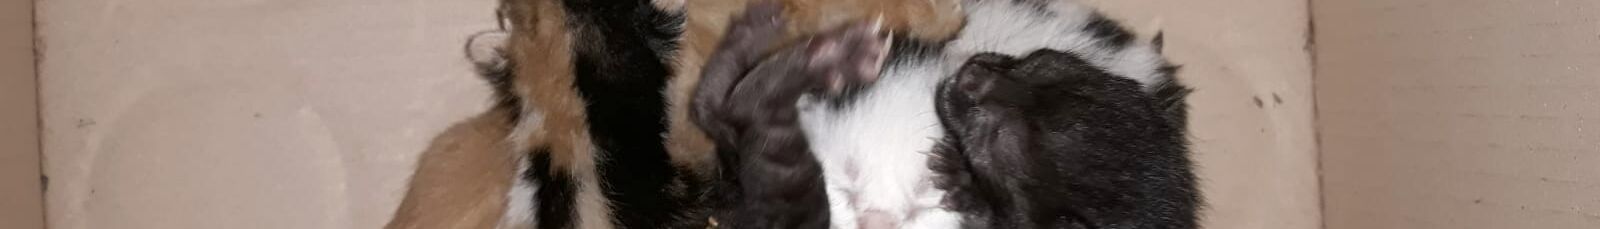 Five newborn baby kittens abandoned